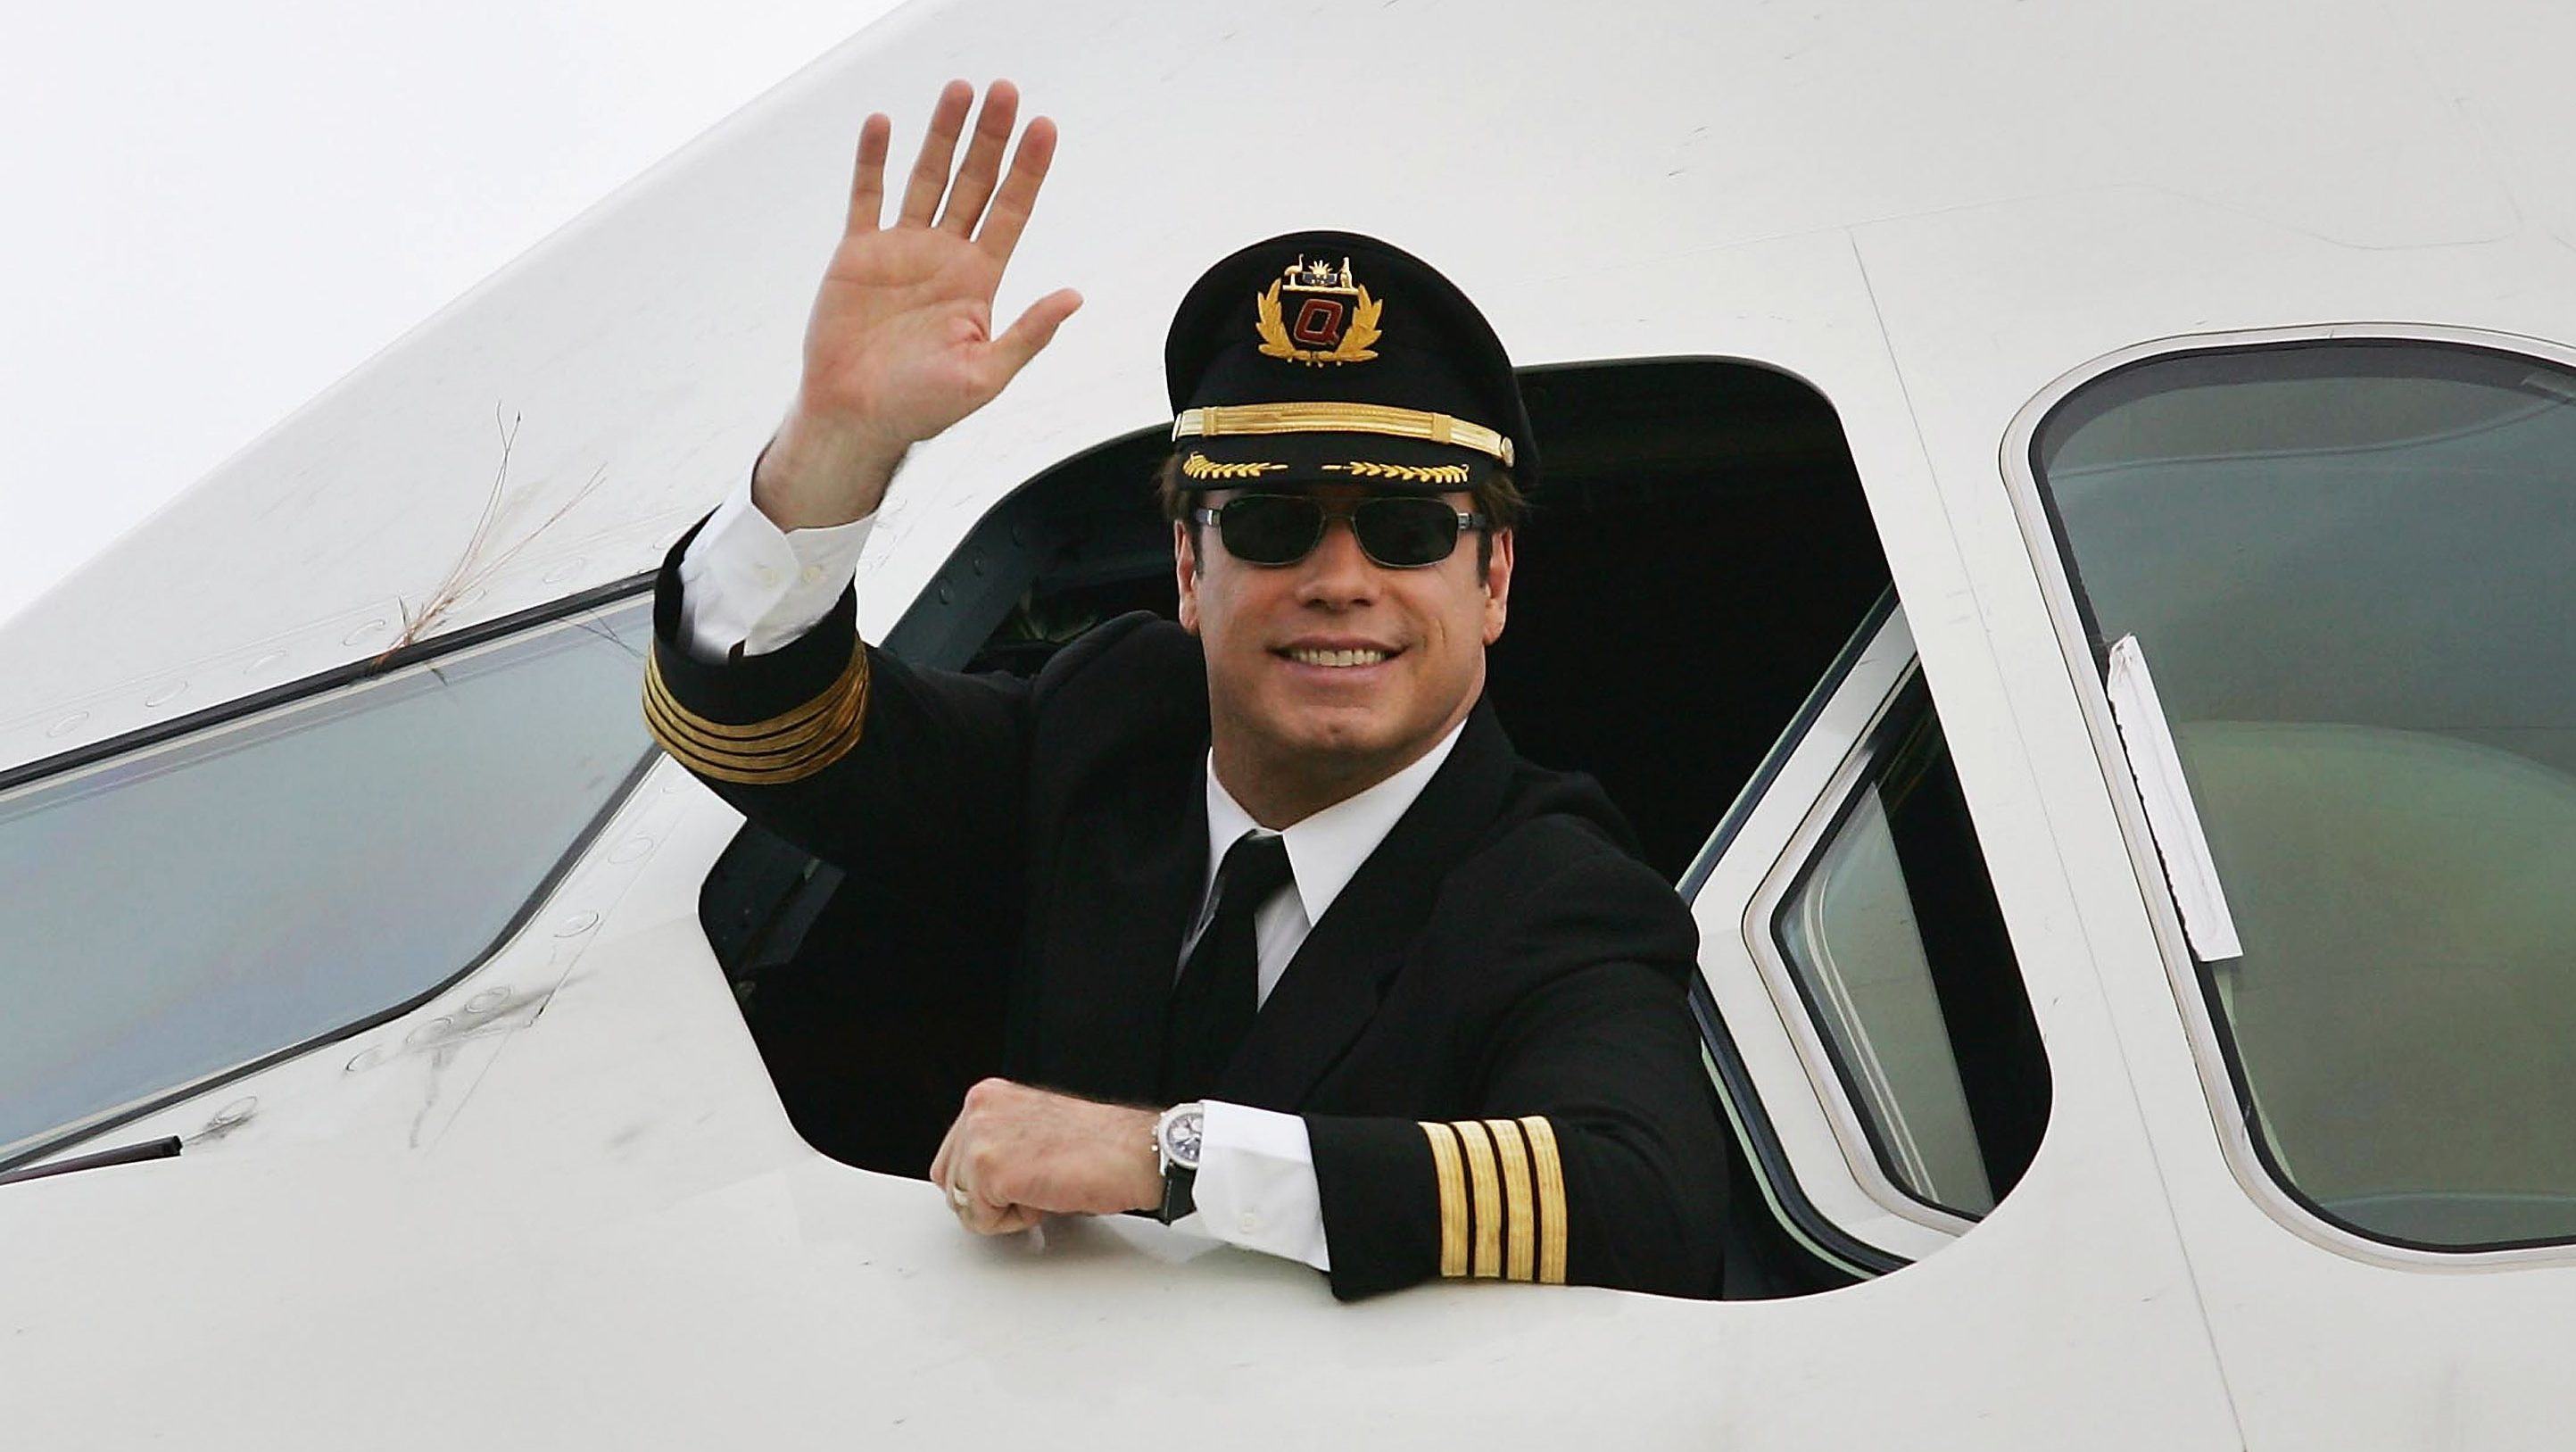 John Travolta megszerezte az engedélyt, hogy Boeing 737-es utasszállítót vezethessen